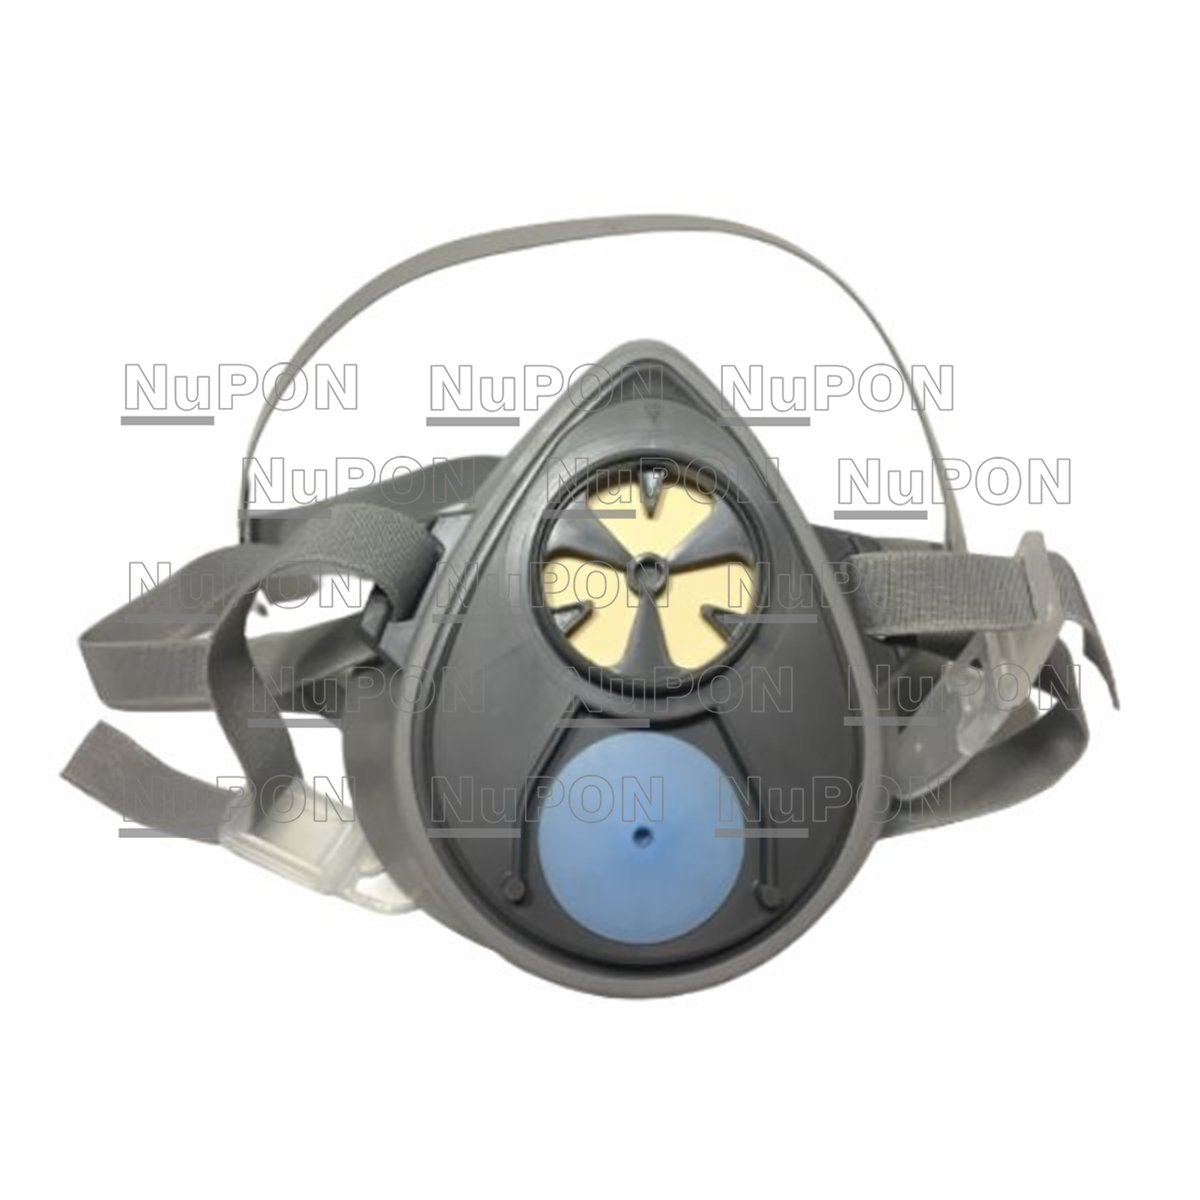 3M Single Cartridge Half Facepiece Respirator 3200